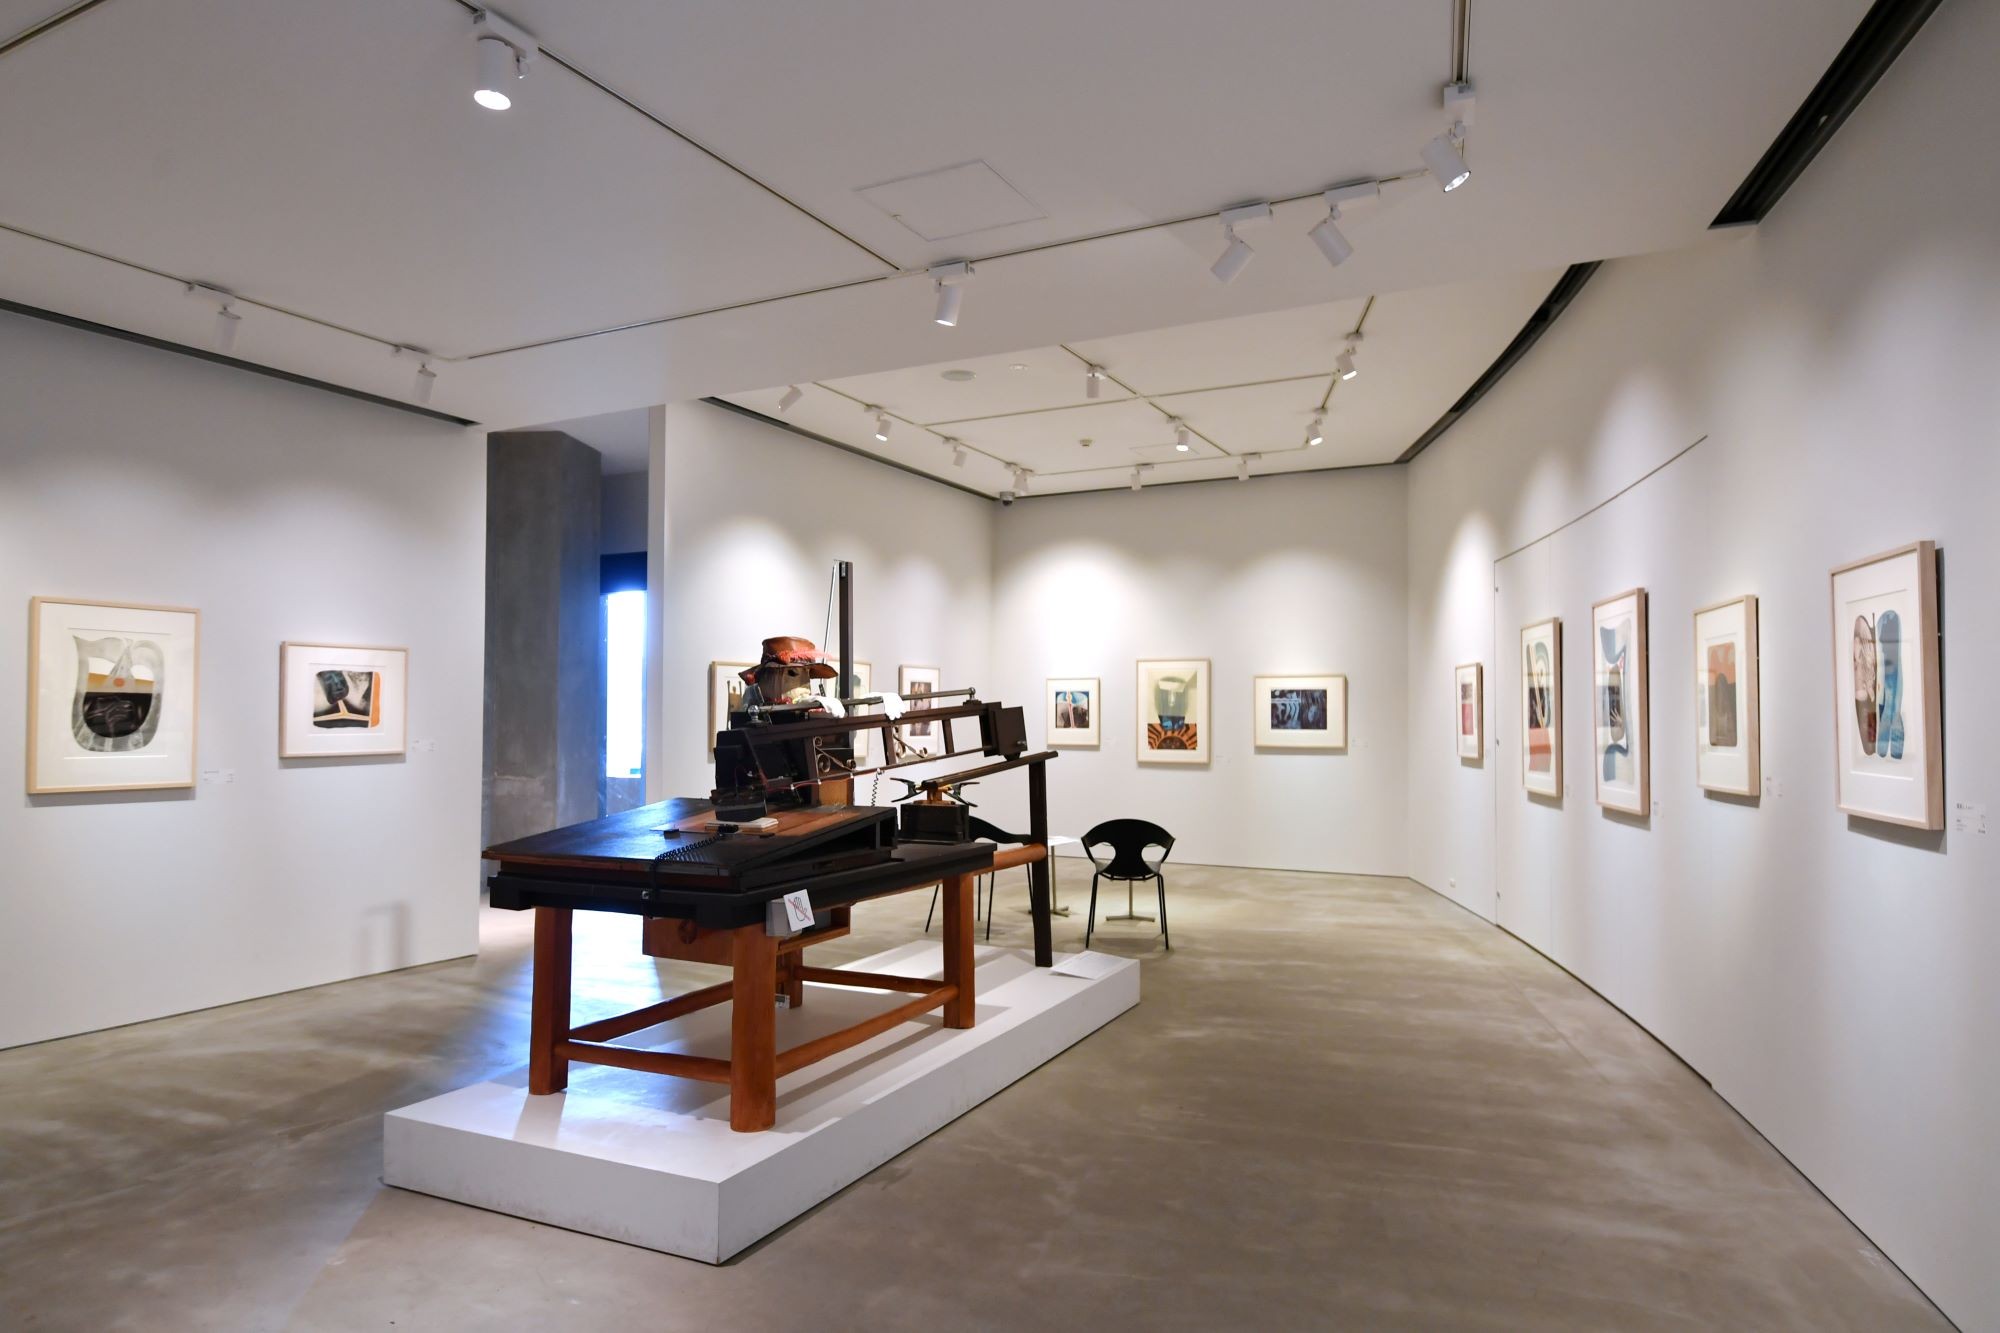 常設展示室では、日本を代表する銅版画家であり、市原市名誉市民である深沢幸雄（元 本学版画専攻教授）の作品約500点を中心に収蔵展示を行っている。